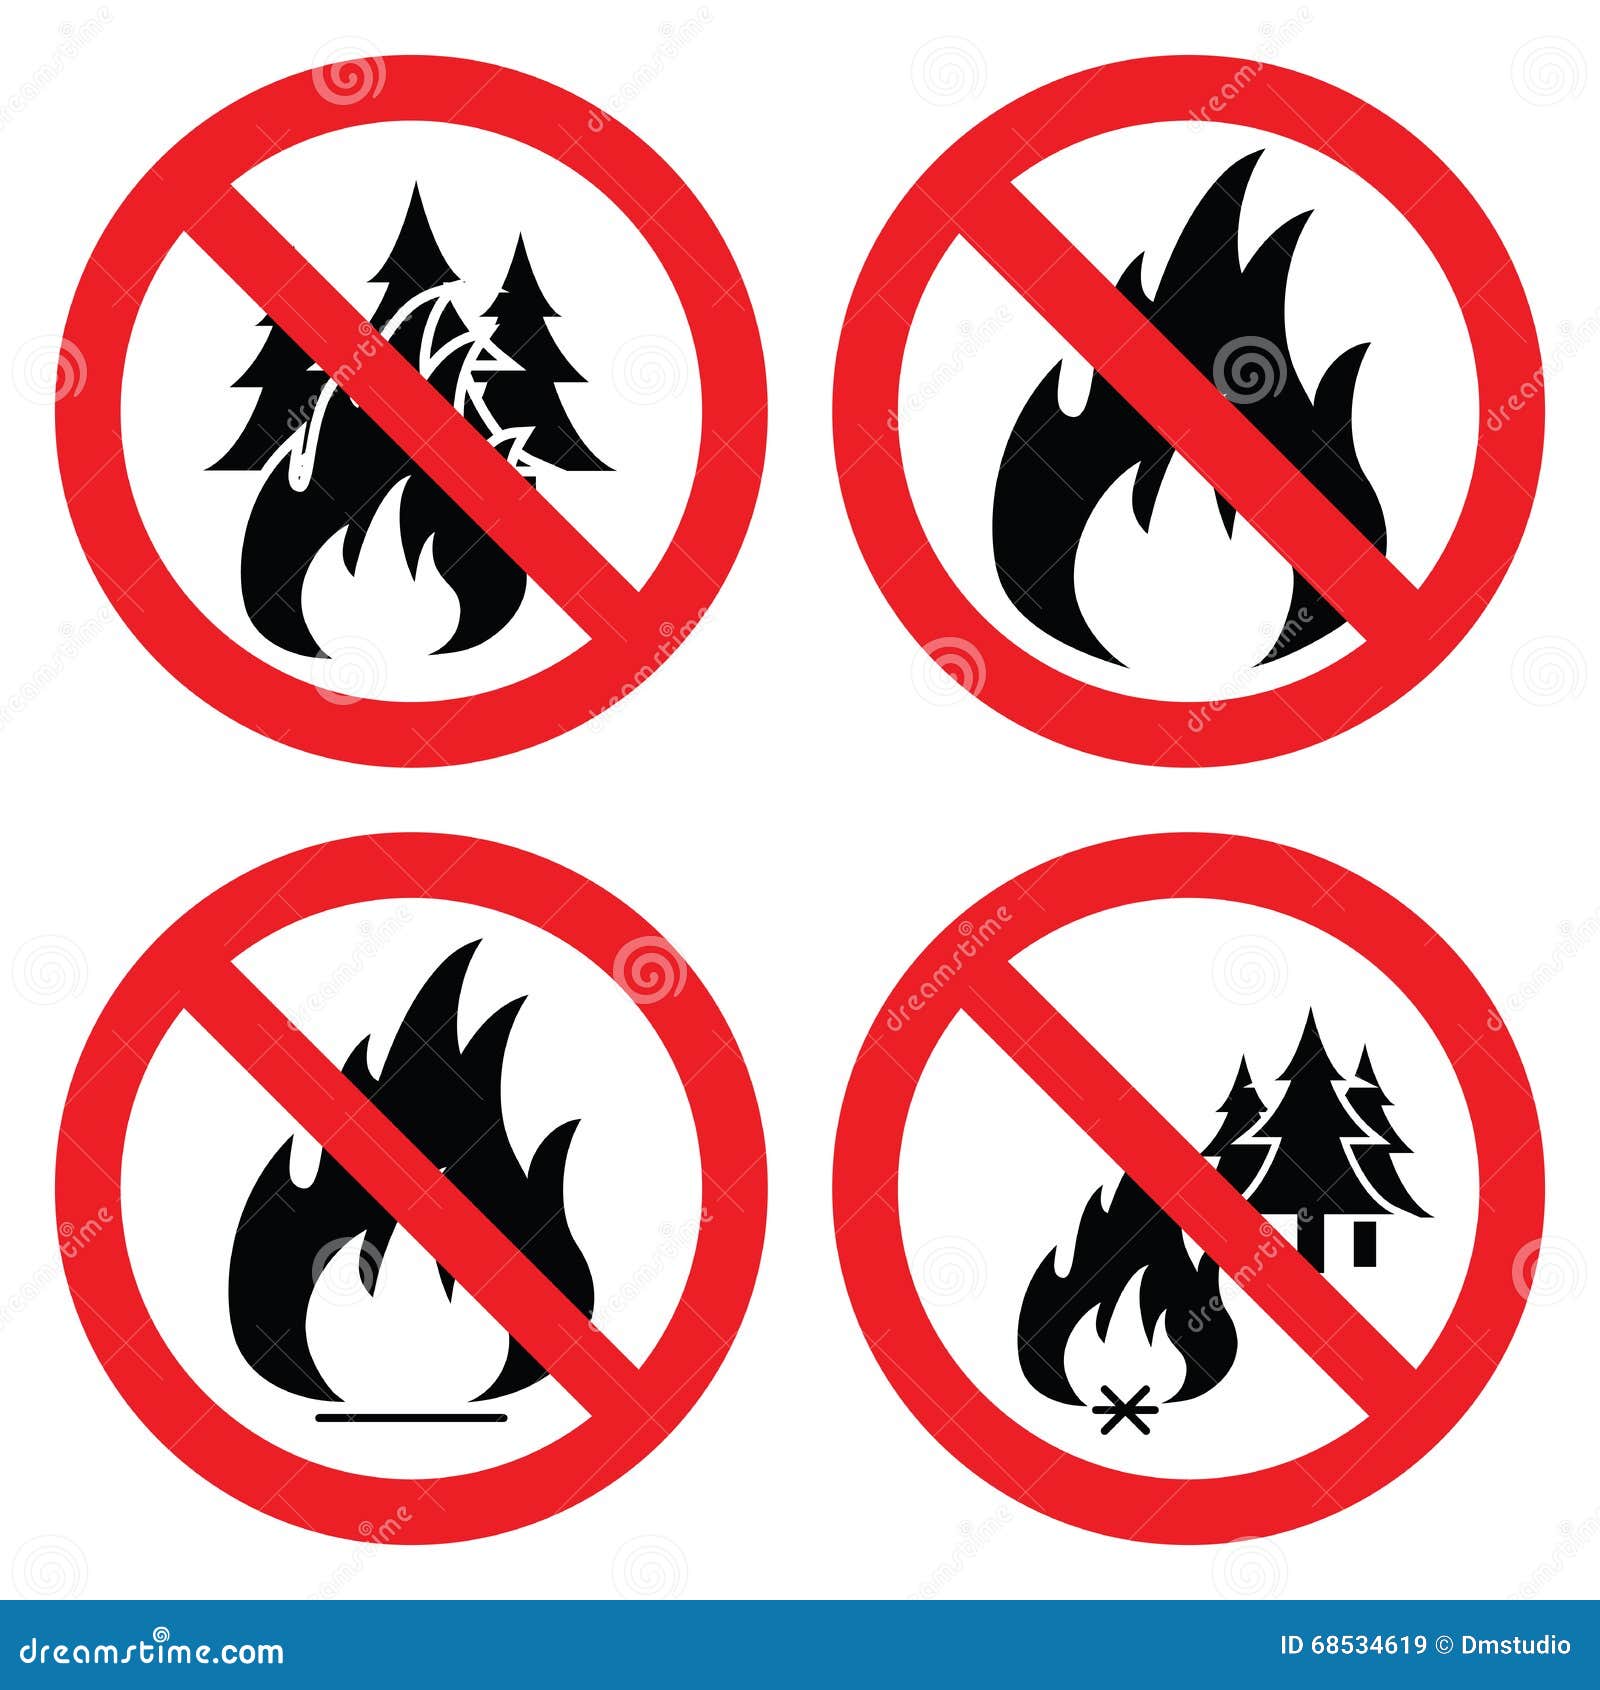 Условные знаки чтобы не было пожара придумай. Знаки чтобы не было пожара. Условные значки чтобы не было пожара. Значки пожар леса. Предупреждающие знаки в лесу.